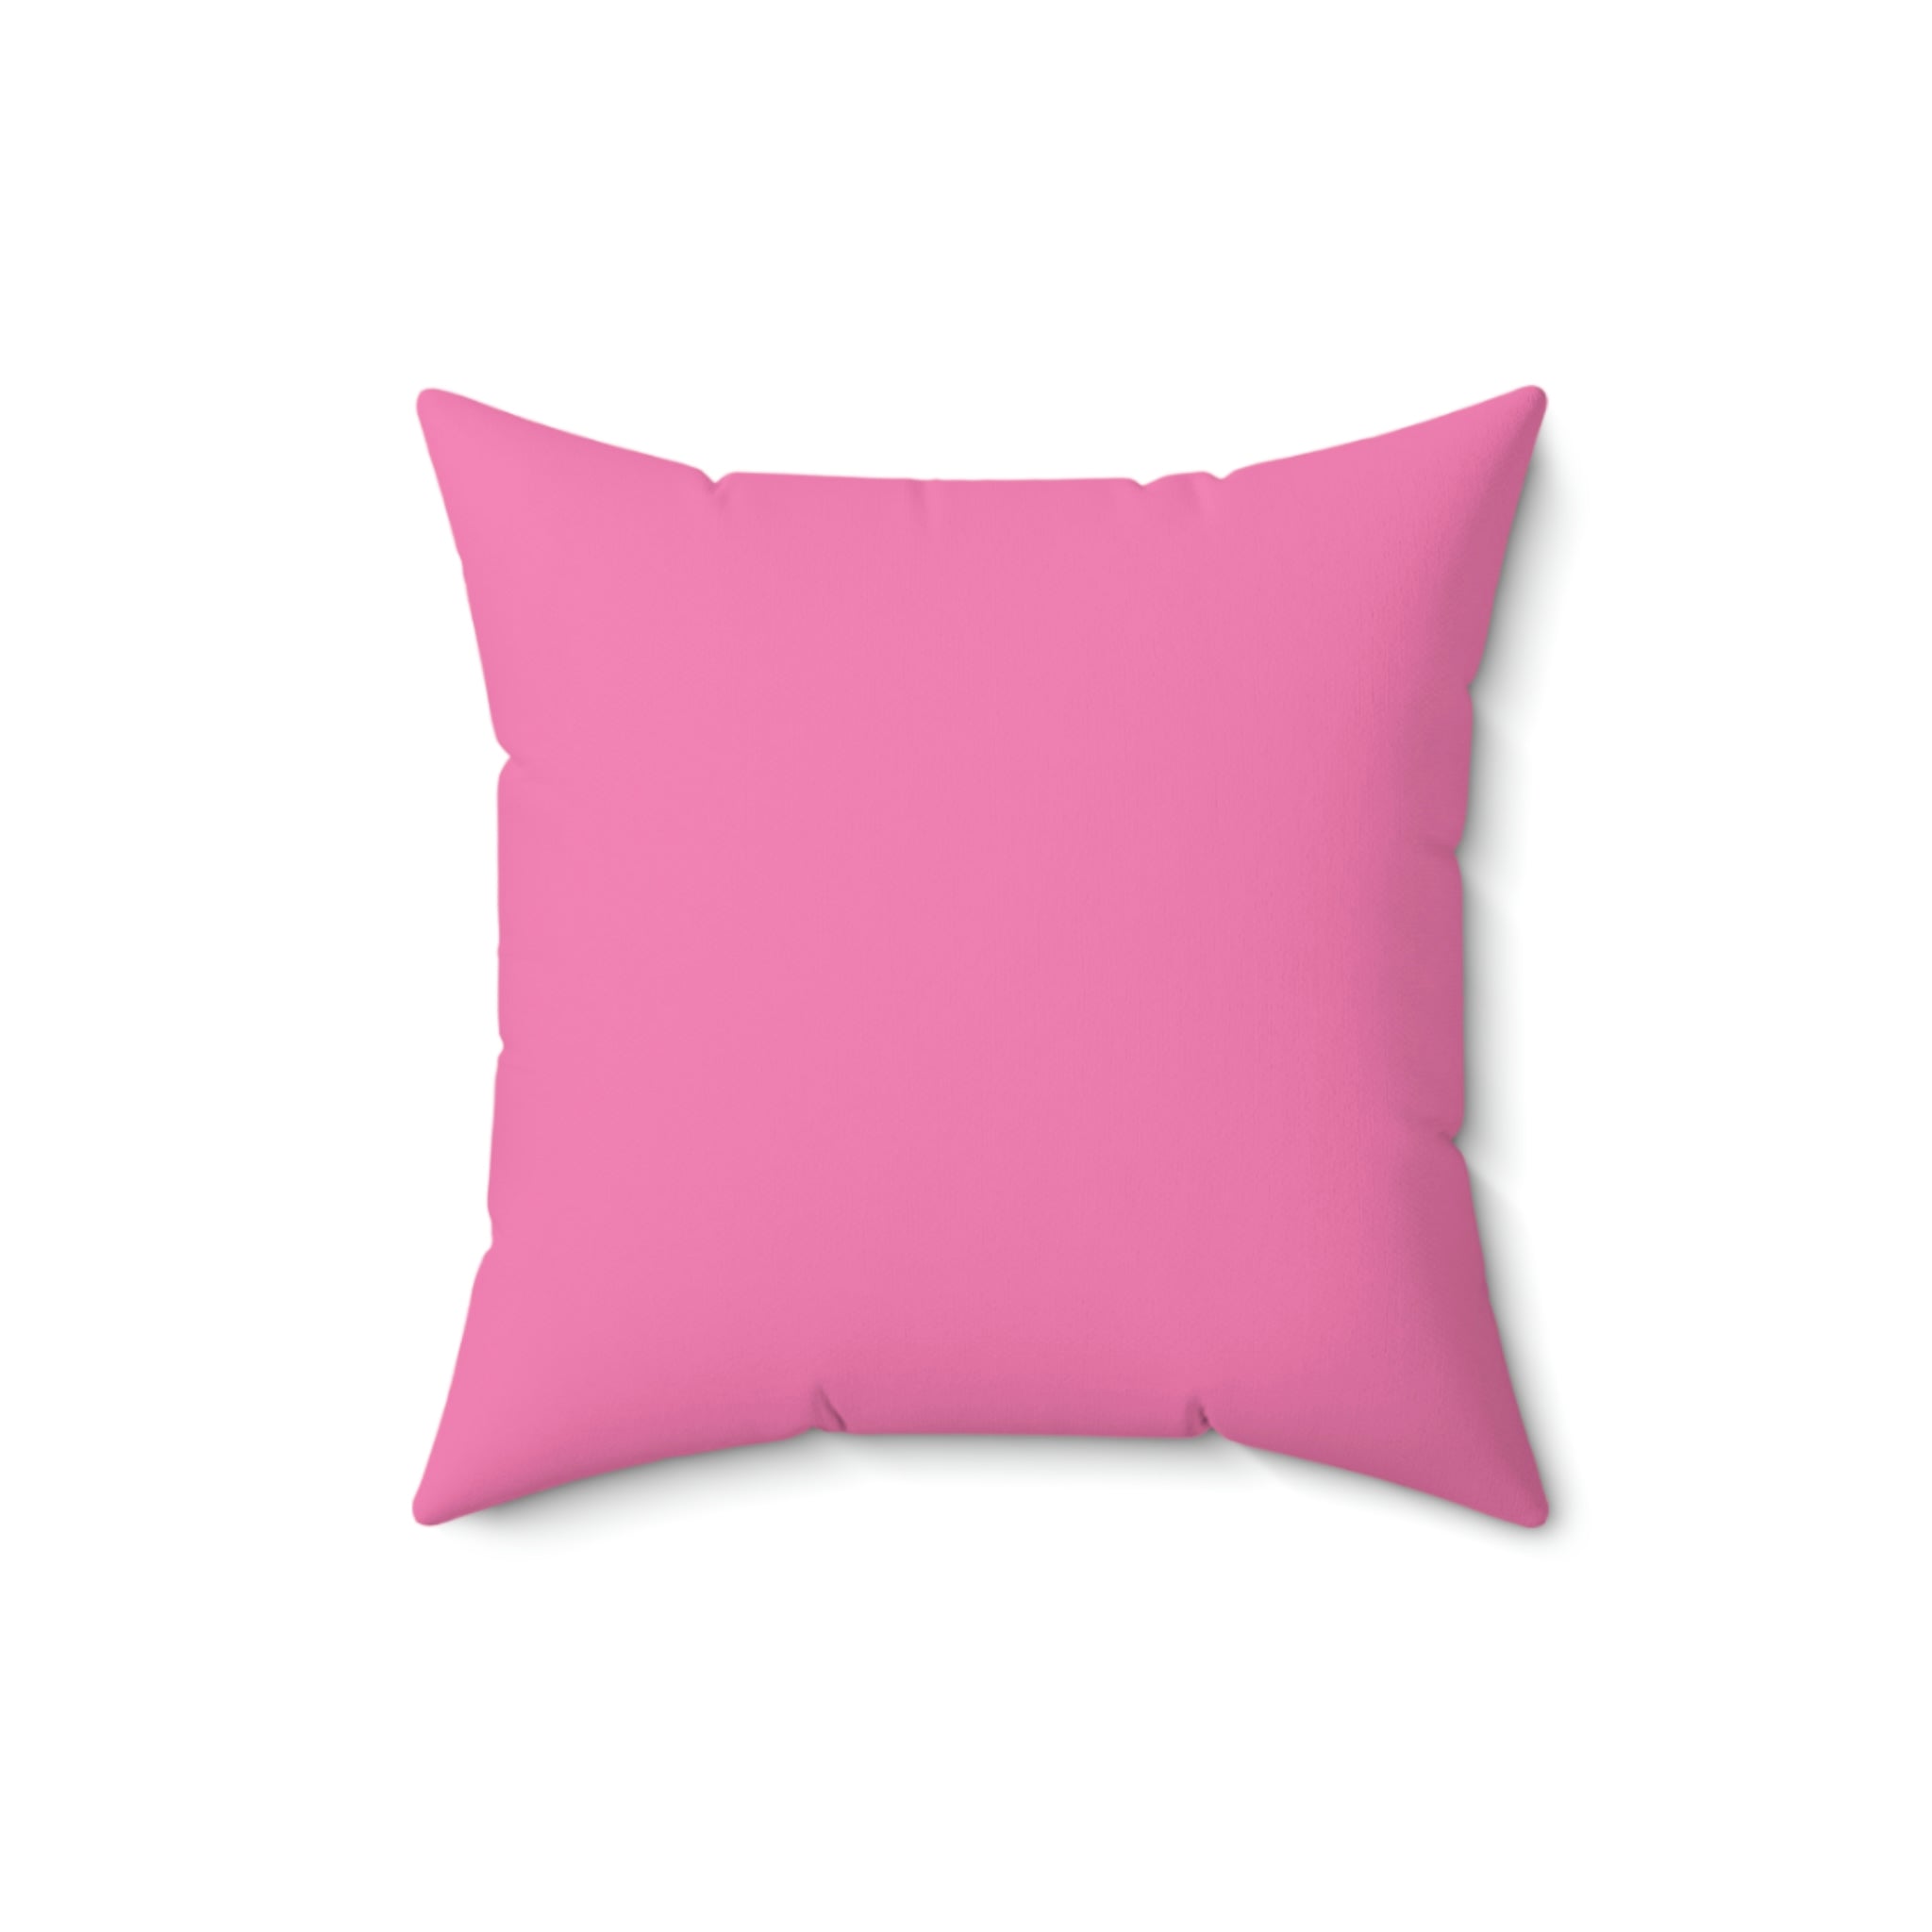 Spun Polyester Pillow Jack pink